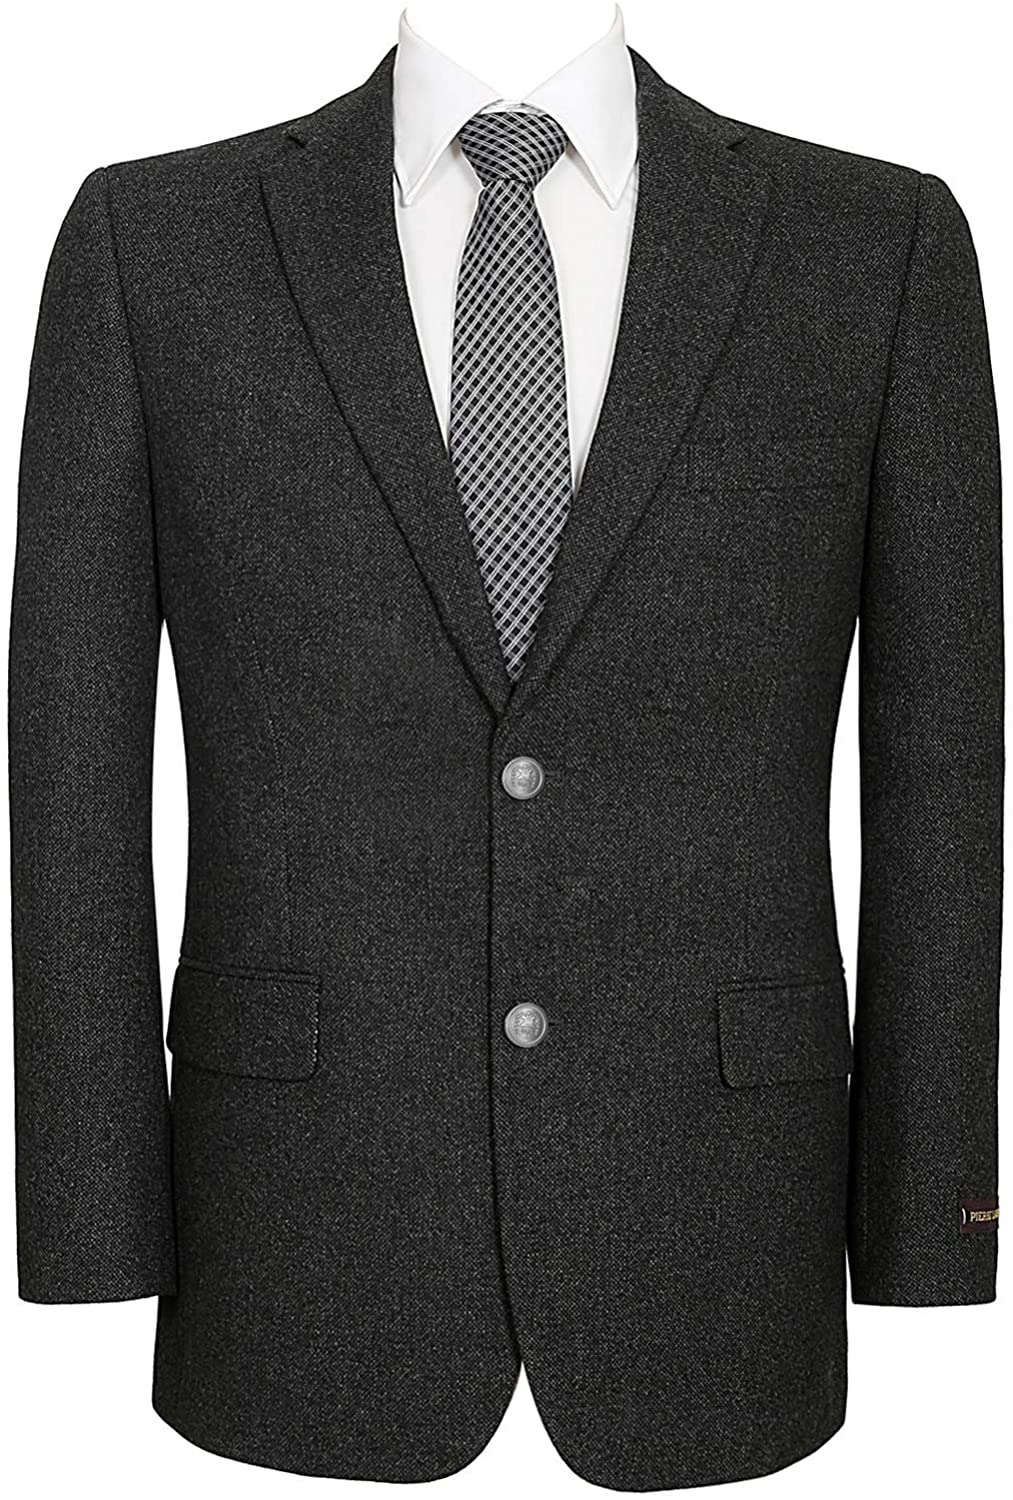 Men's Sport Coat Classic Fit 2 Button Stretch Blazer Suit Jacket